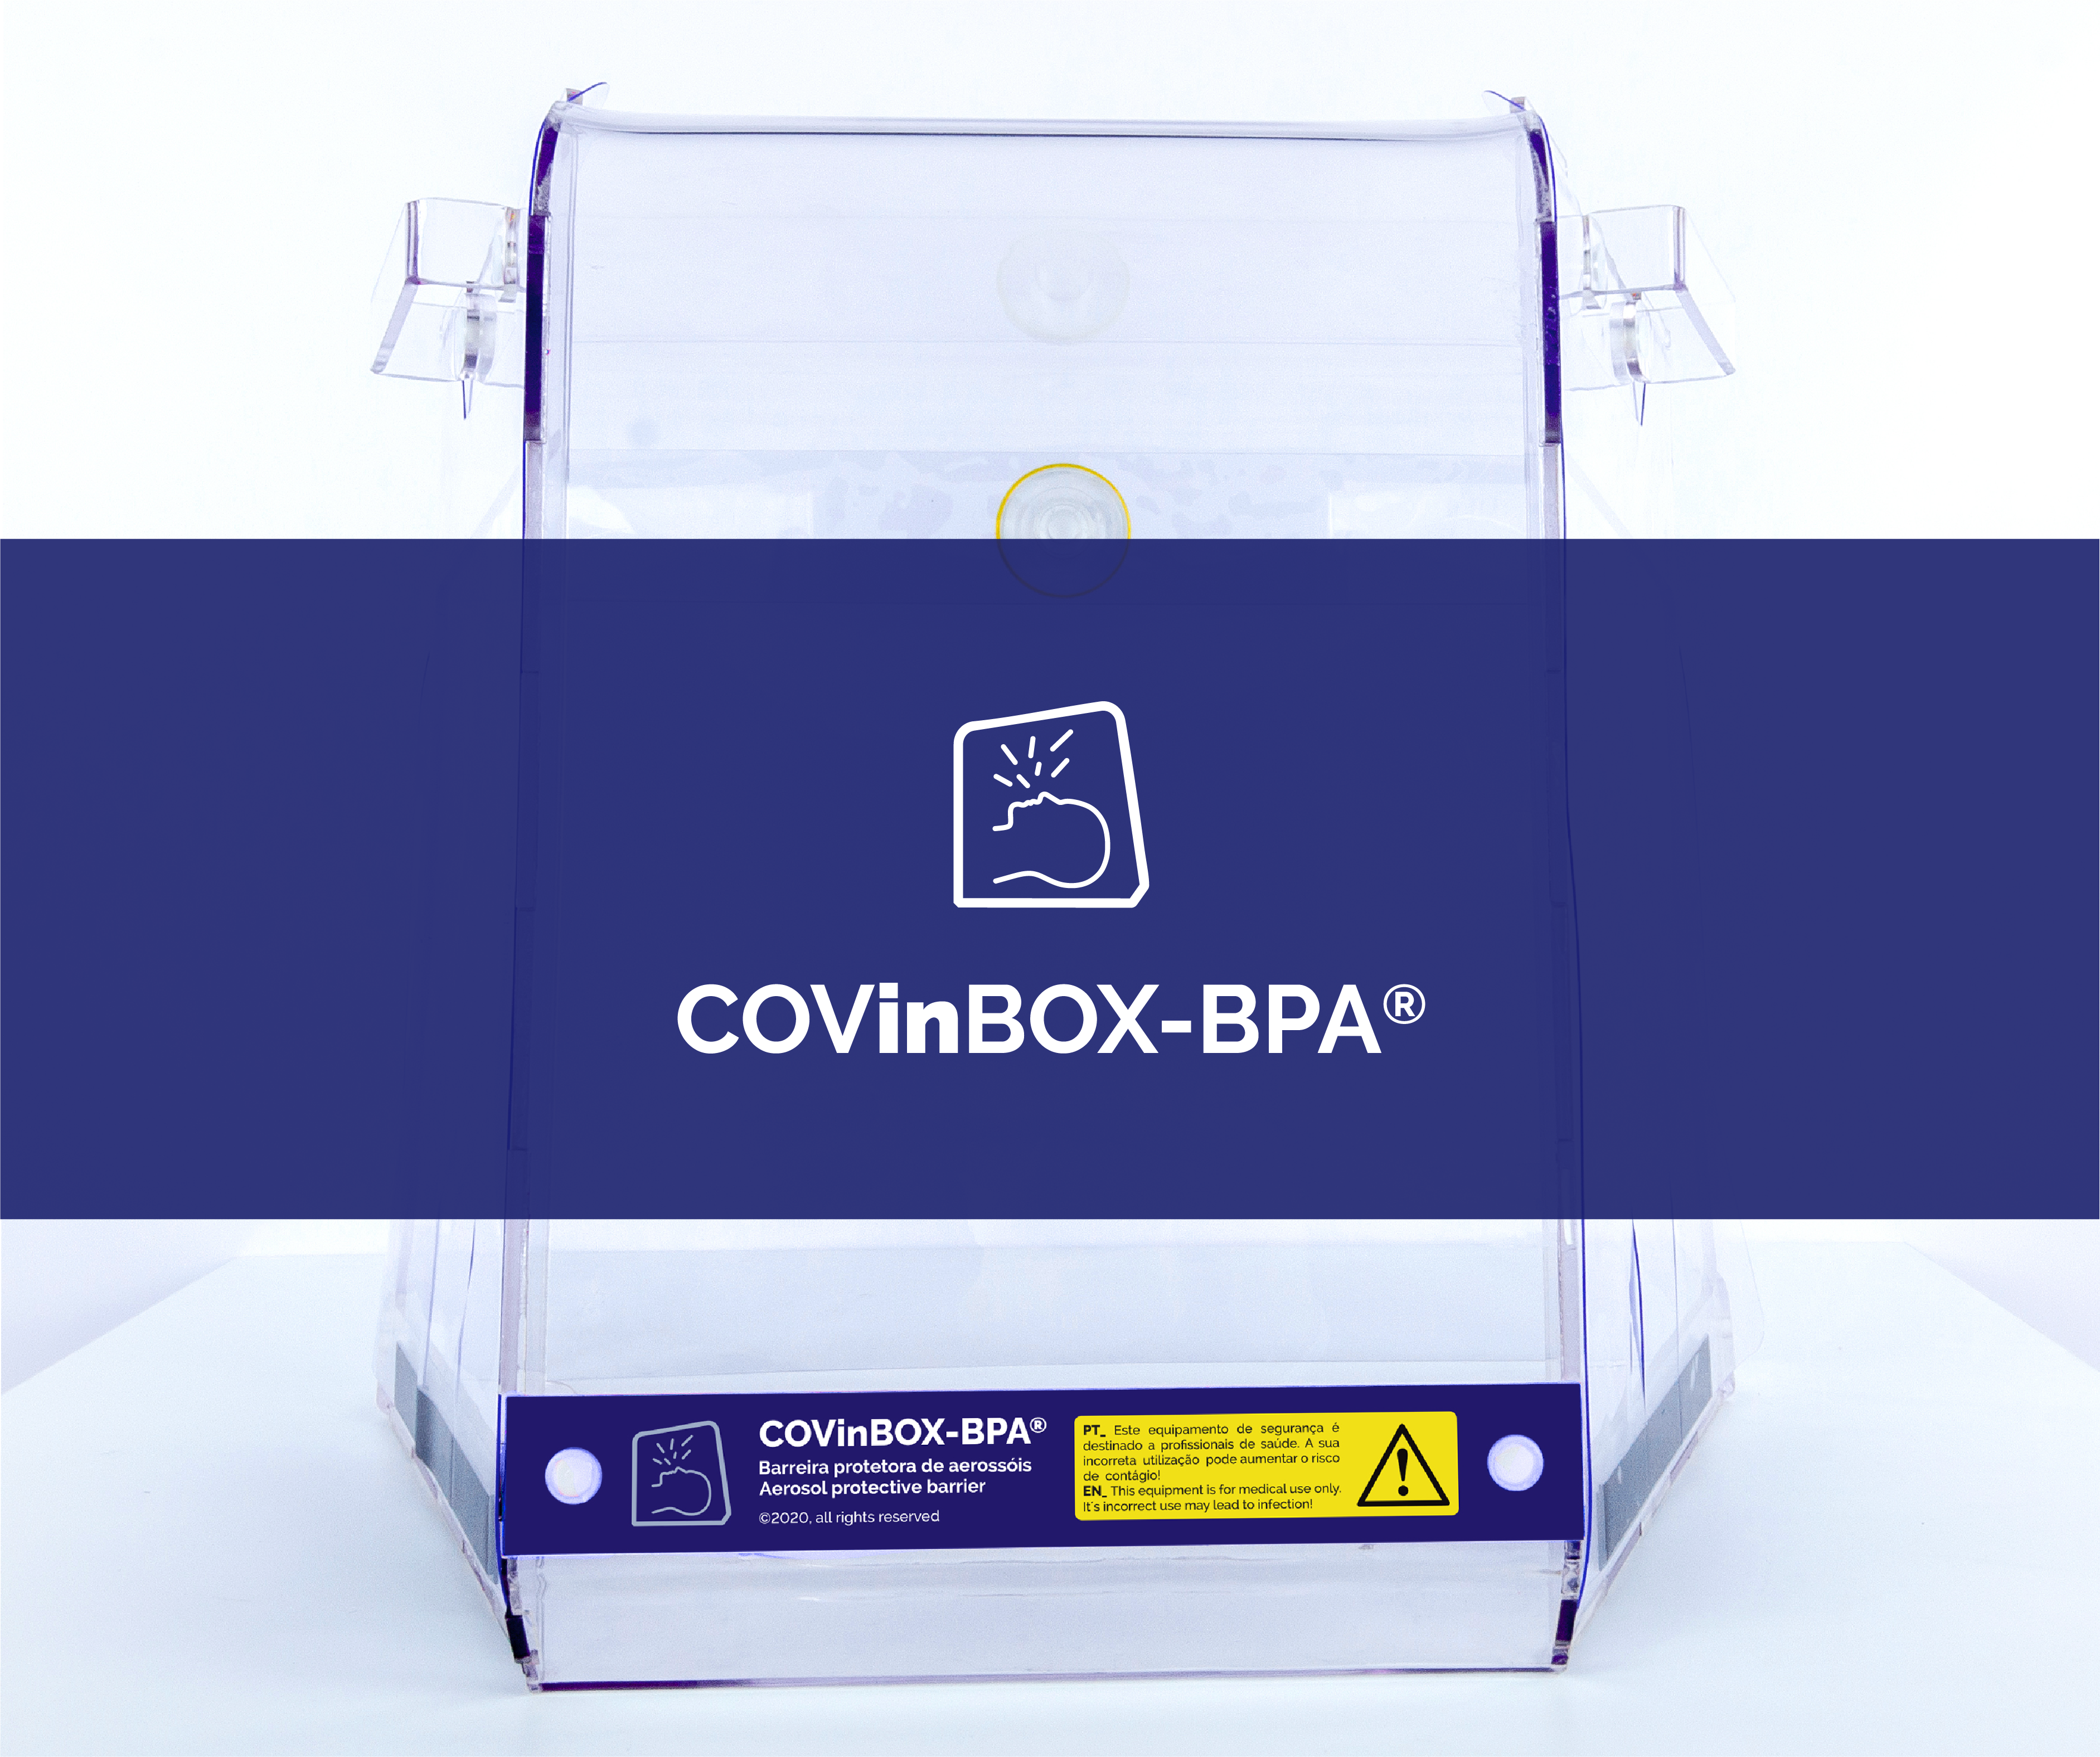 Imprensa Nacional destaca o inovador dispositivo barreira de aerossóis COVinBOX-BPA